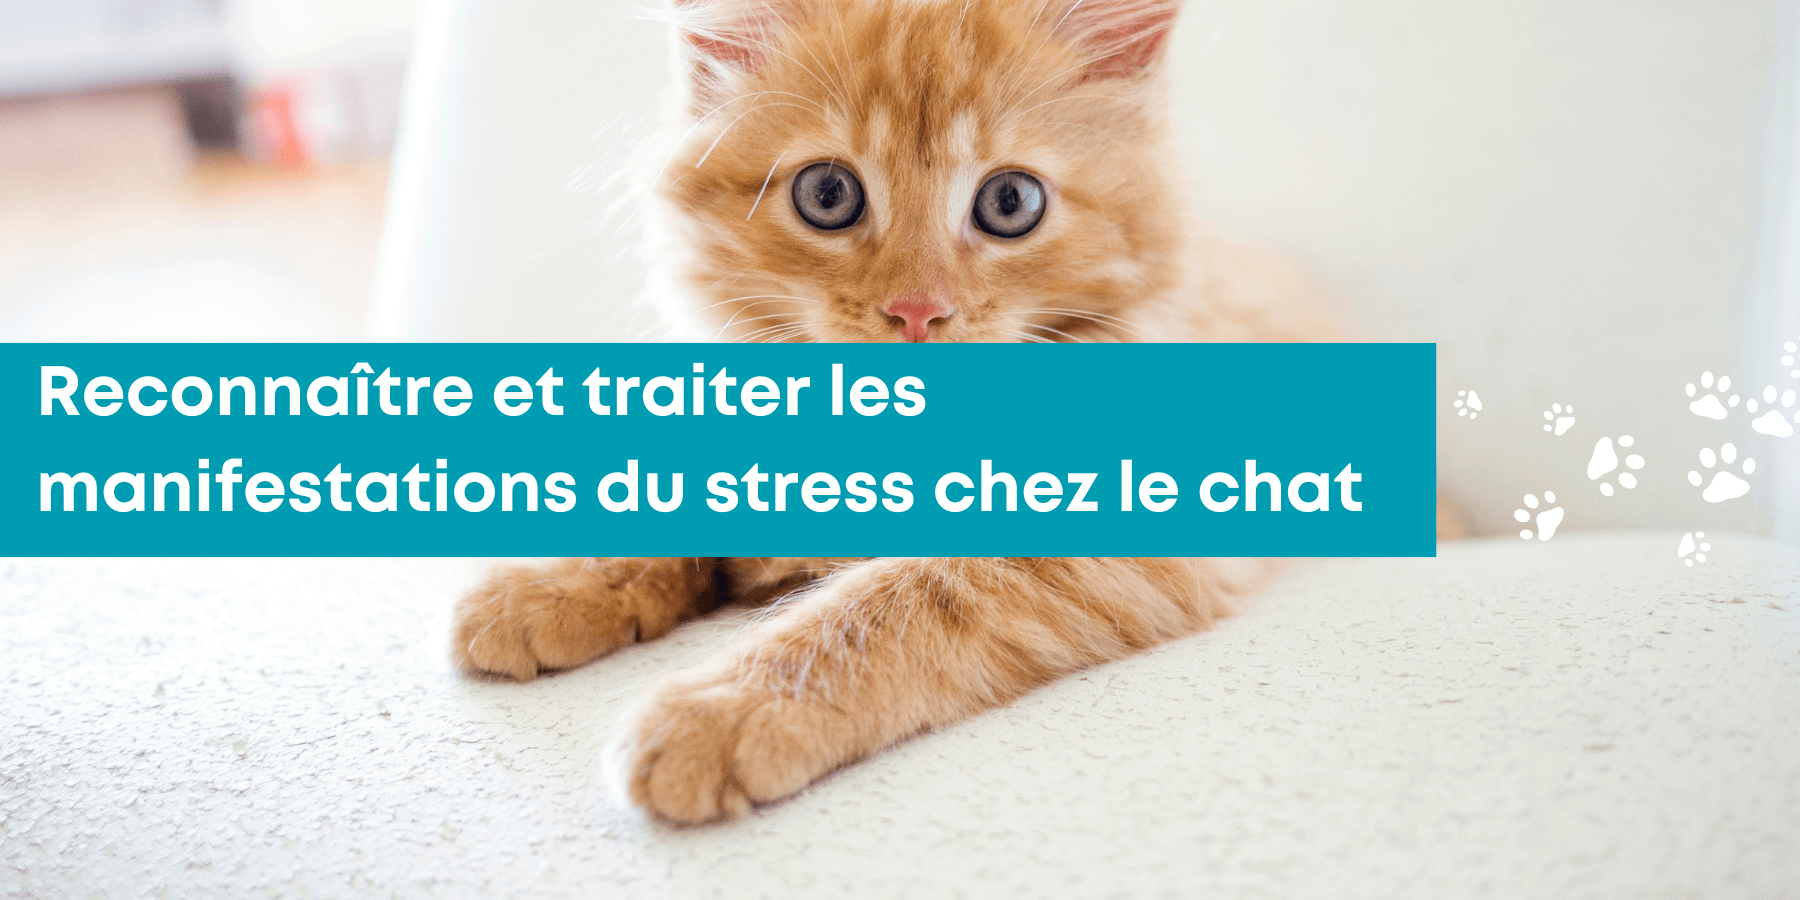 Le stress chez le chat : comment se manifeste-t-il ?